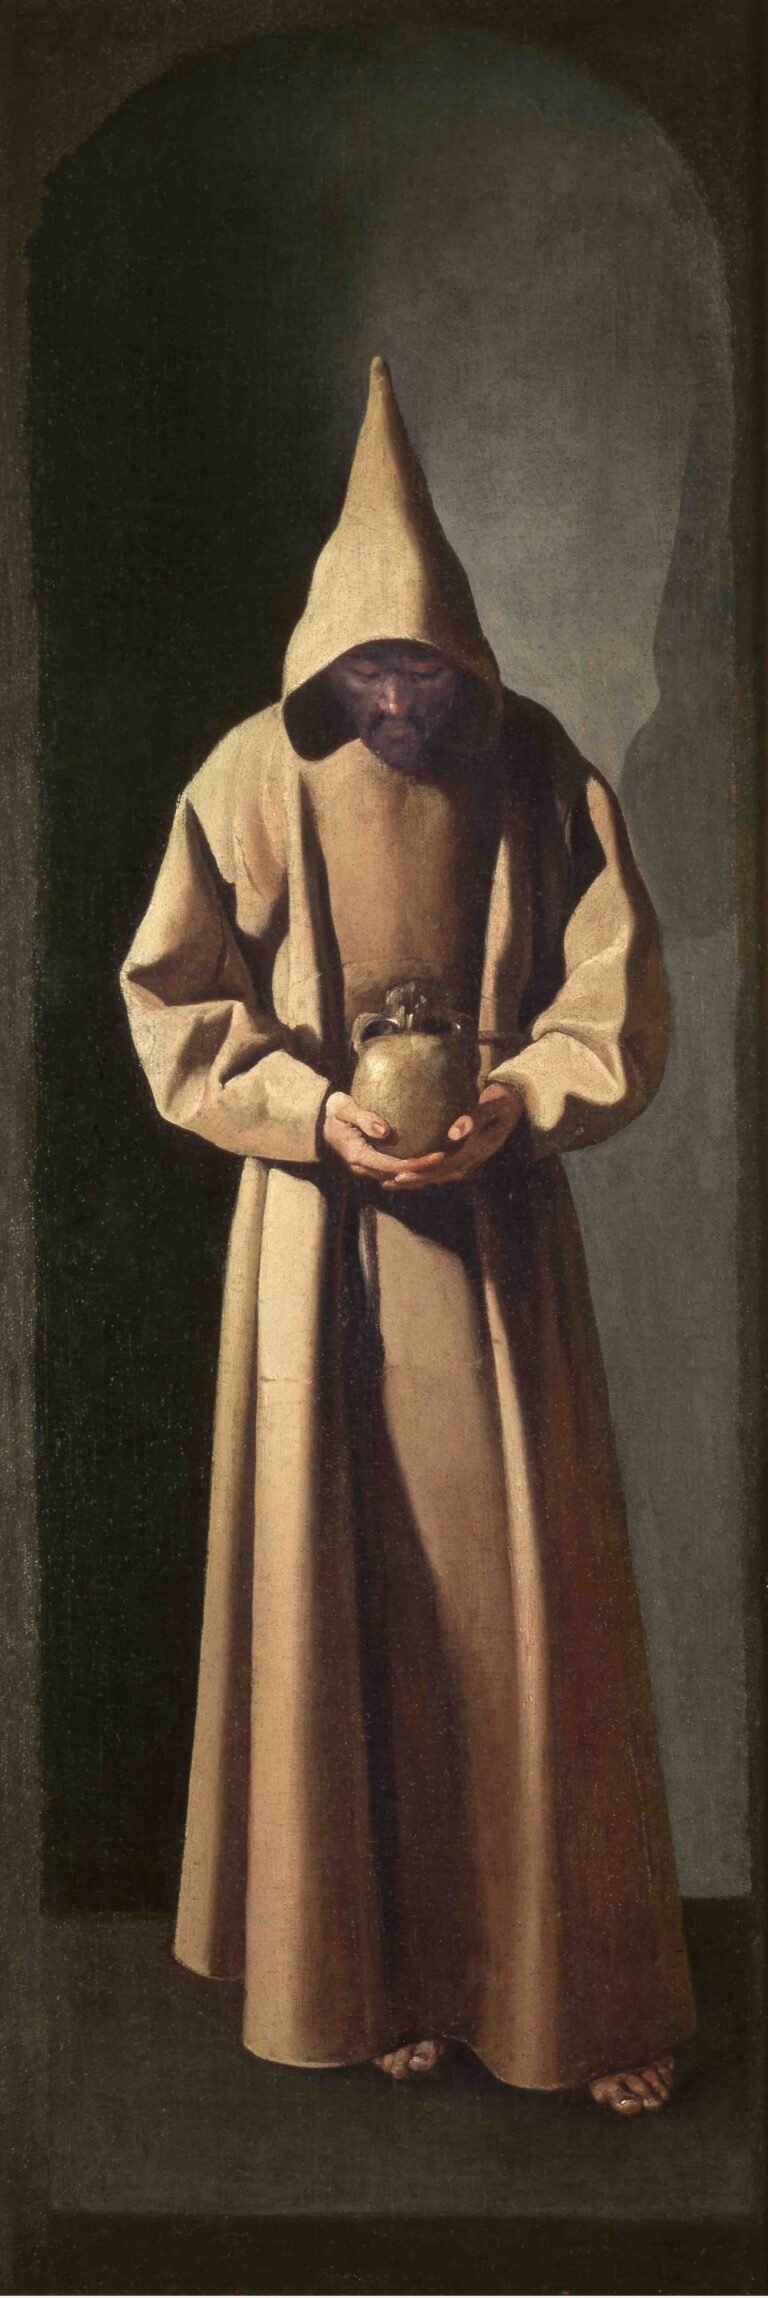 Francisco de Zurbarán, San Francisco de pie contemplando una calavera, 1633-35 ca. - Saint Louis Art Museum